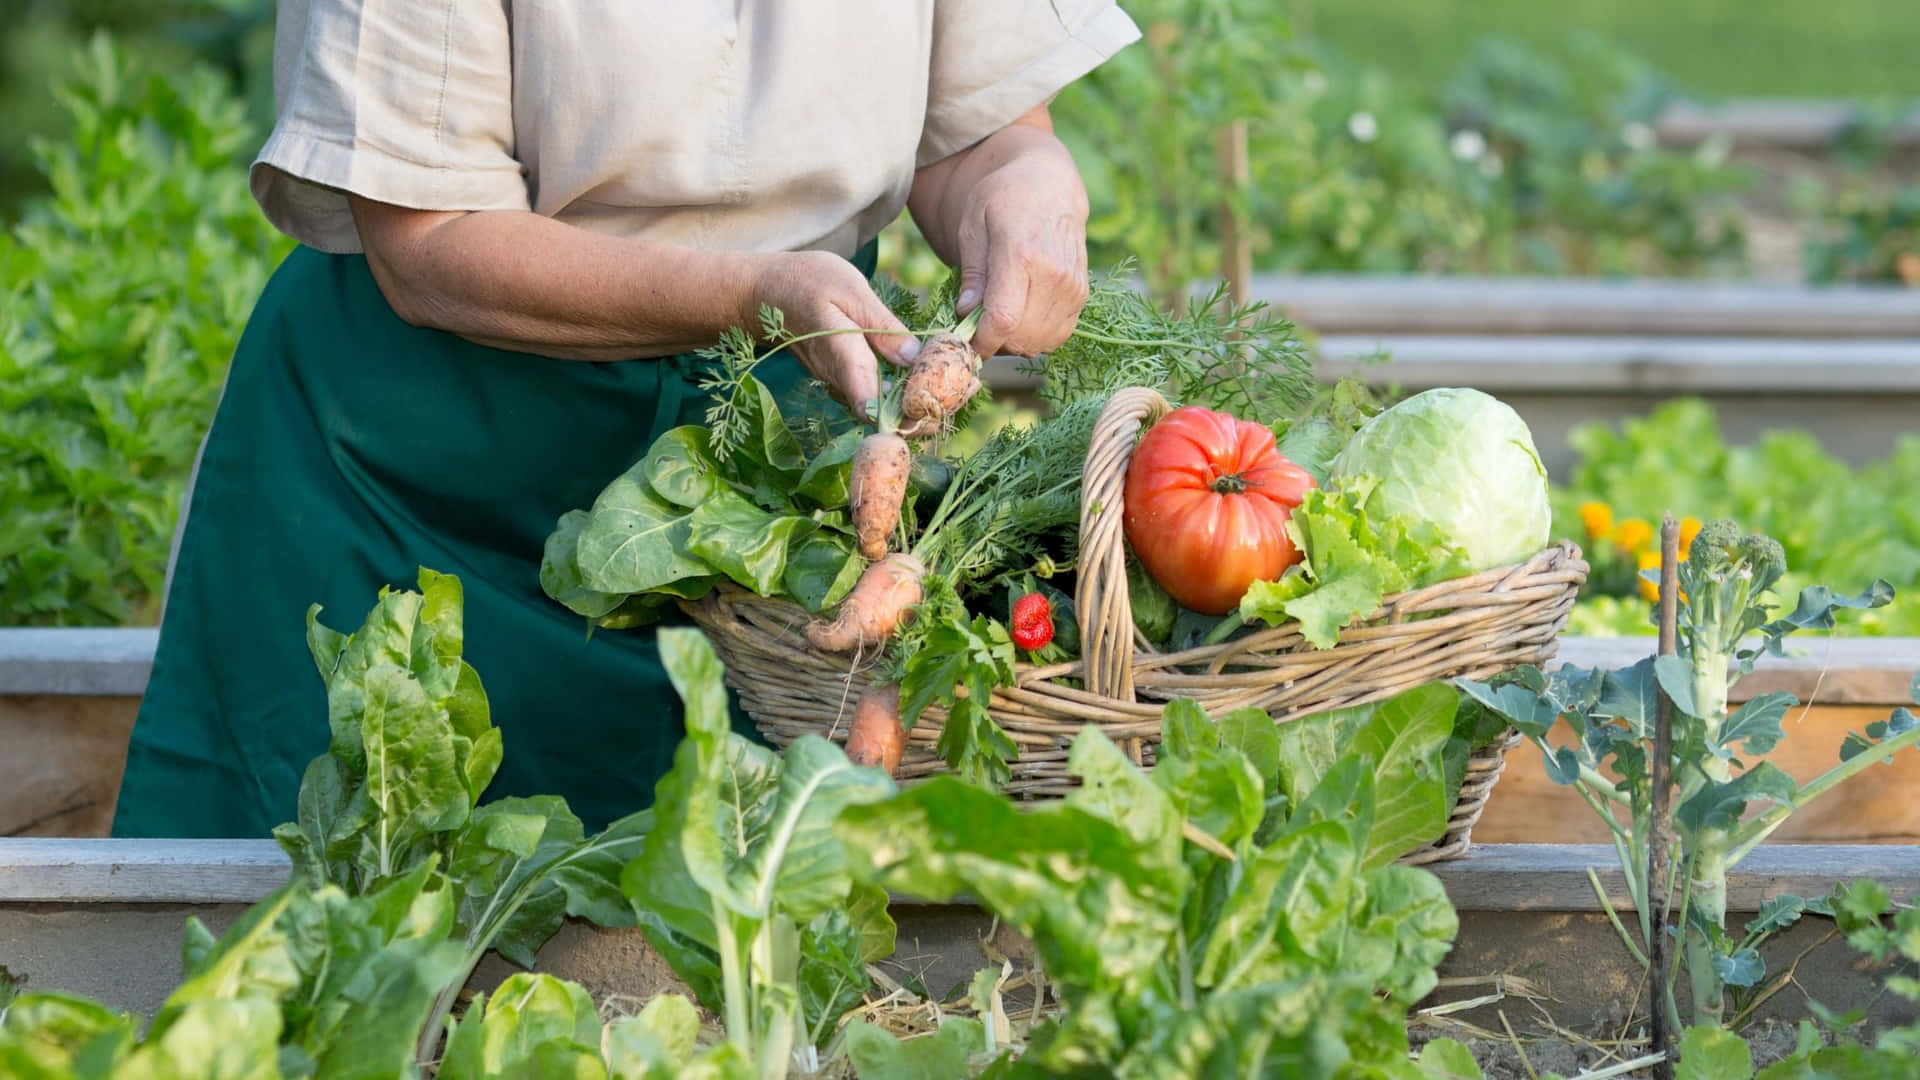 Einefrau Pflückt Gemüse In Einem Garten.